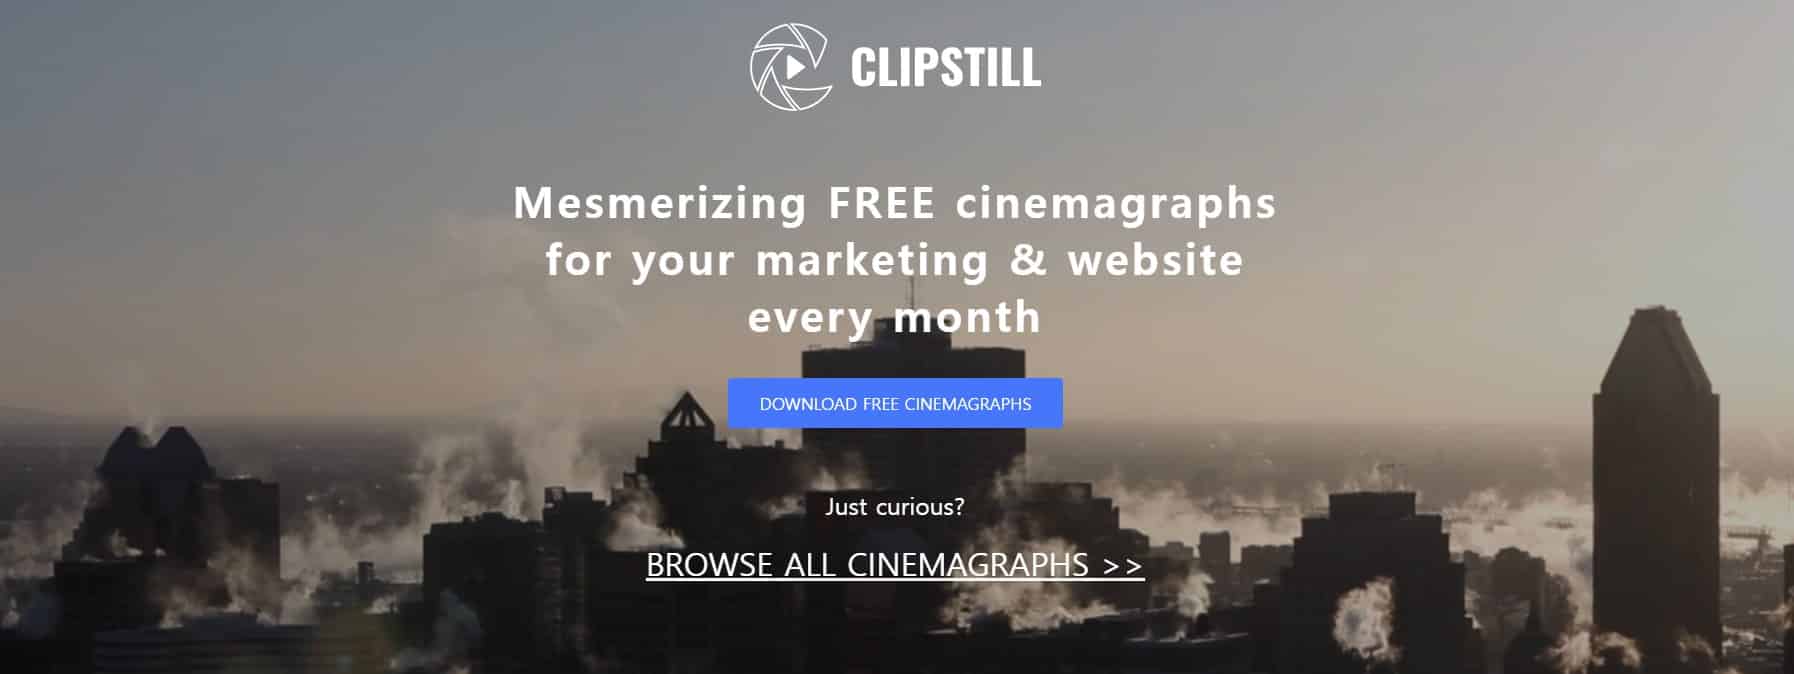 Clipstill 사이트